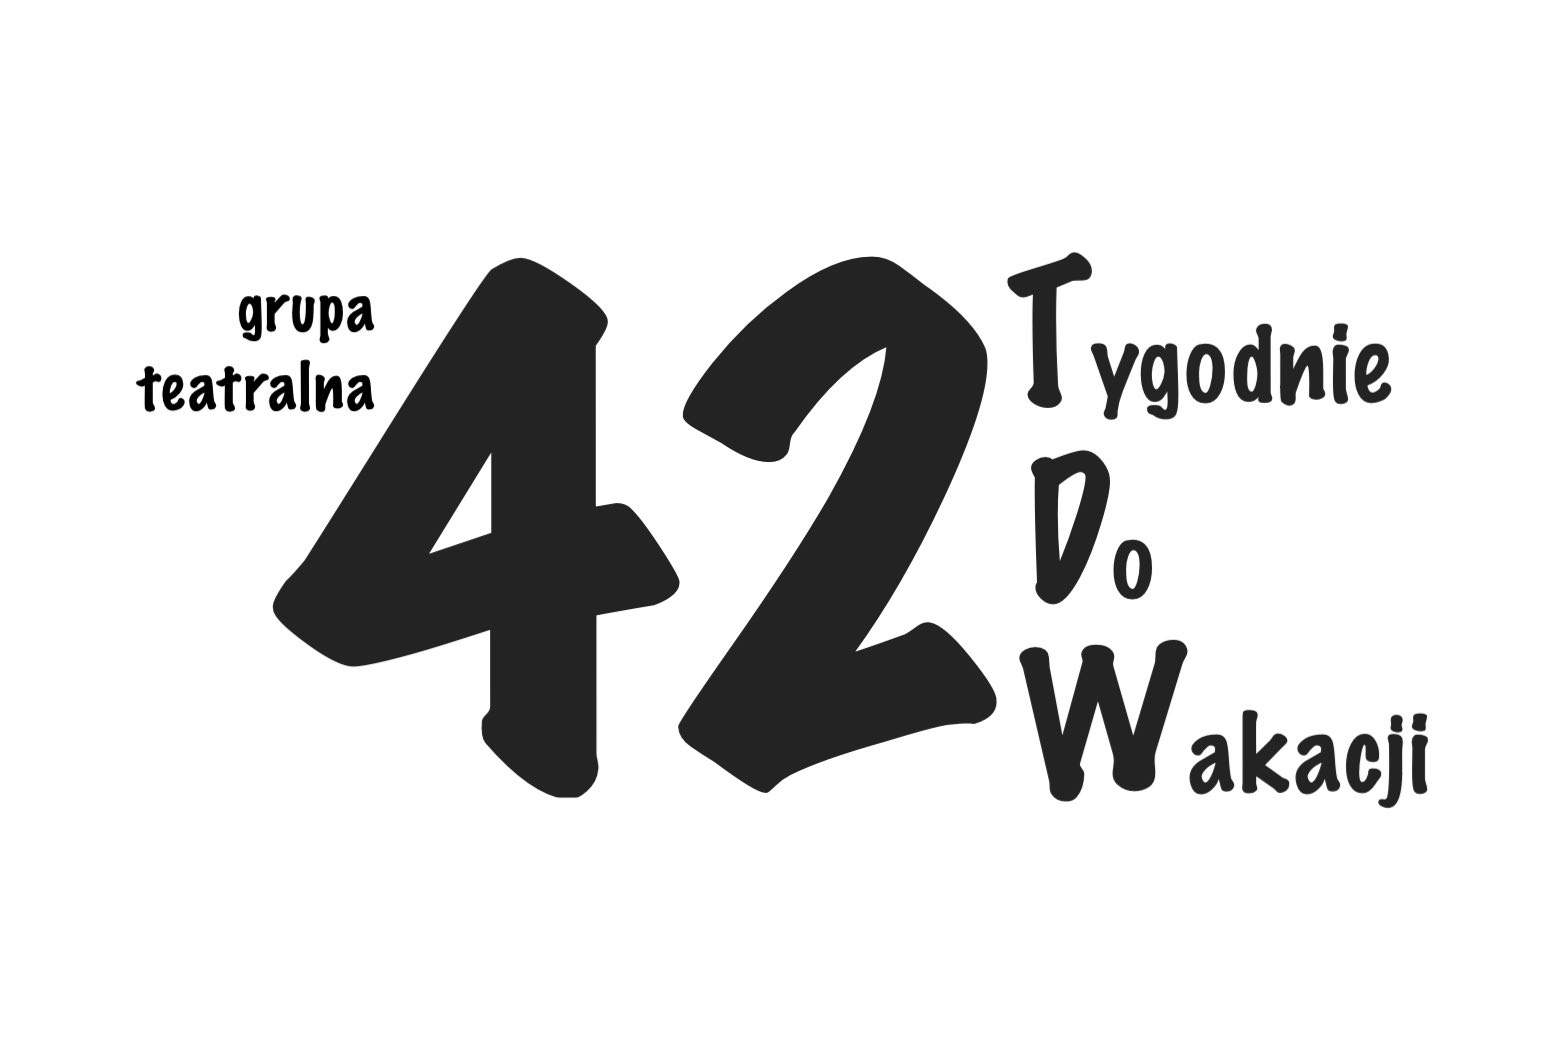 Nazwa grupy teatralnej: 42 Tygodnie Do Wakacji, w skrócie 42TDW